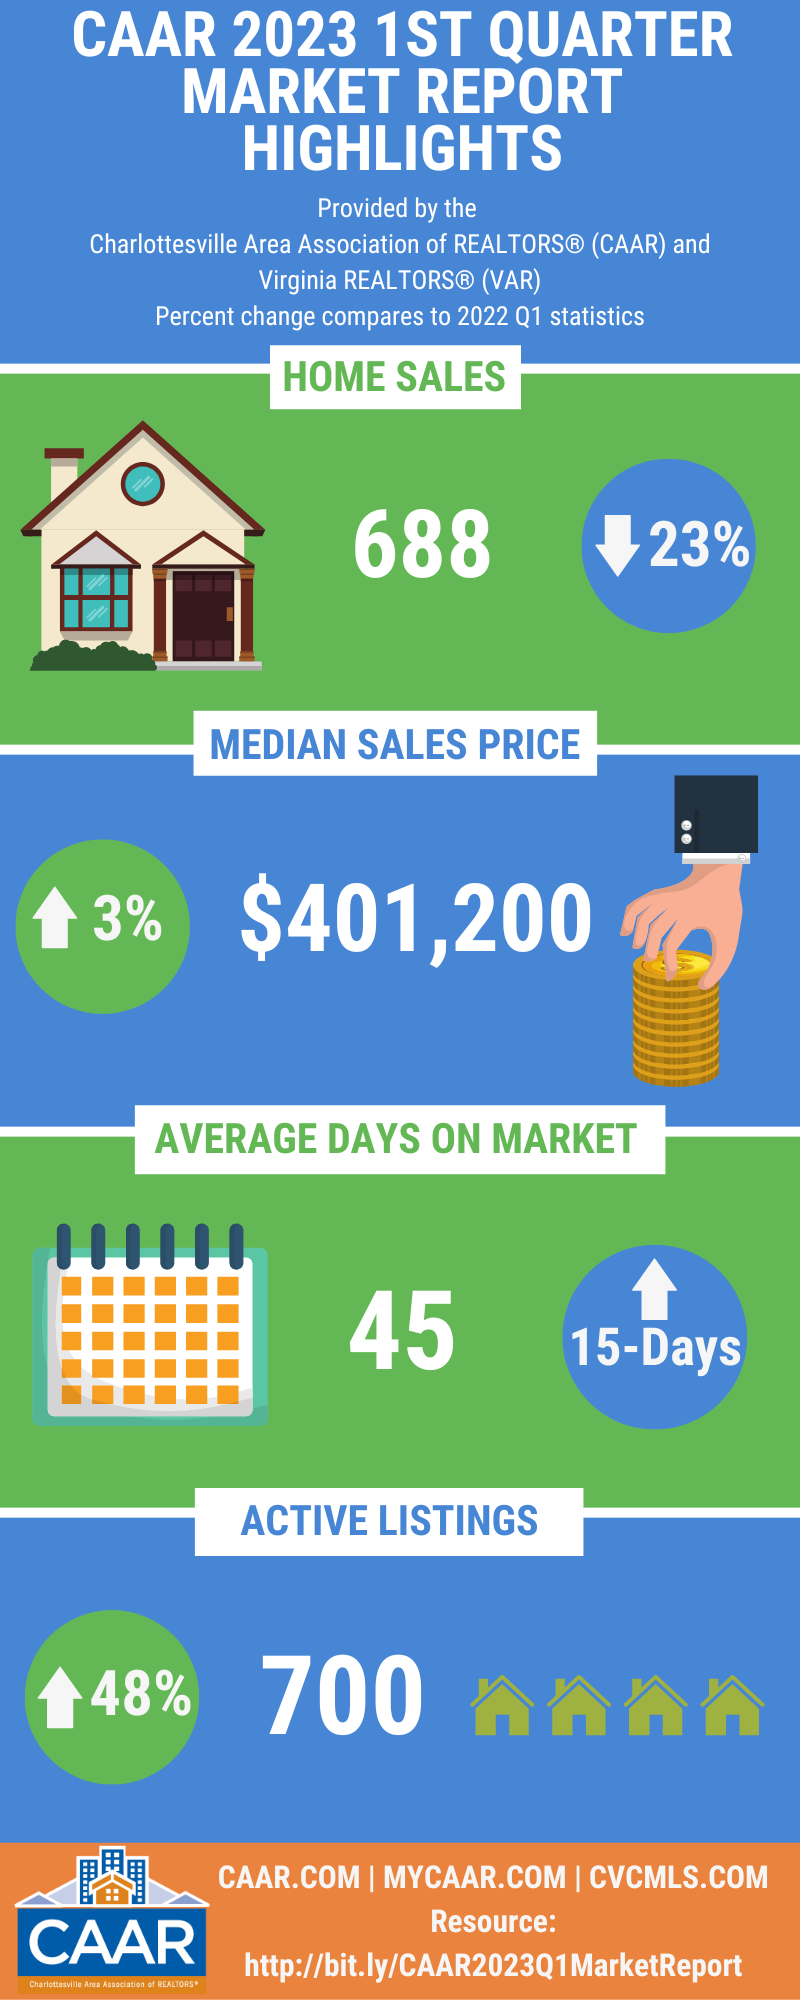 CAAR 2023 Q1 Market Report Infographic